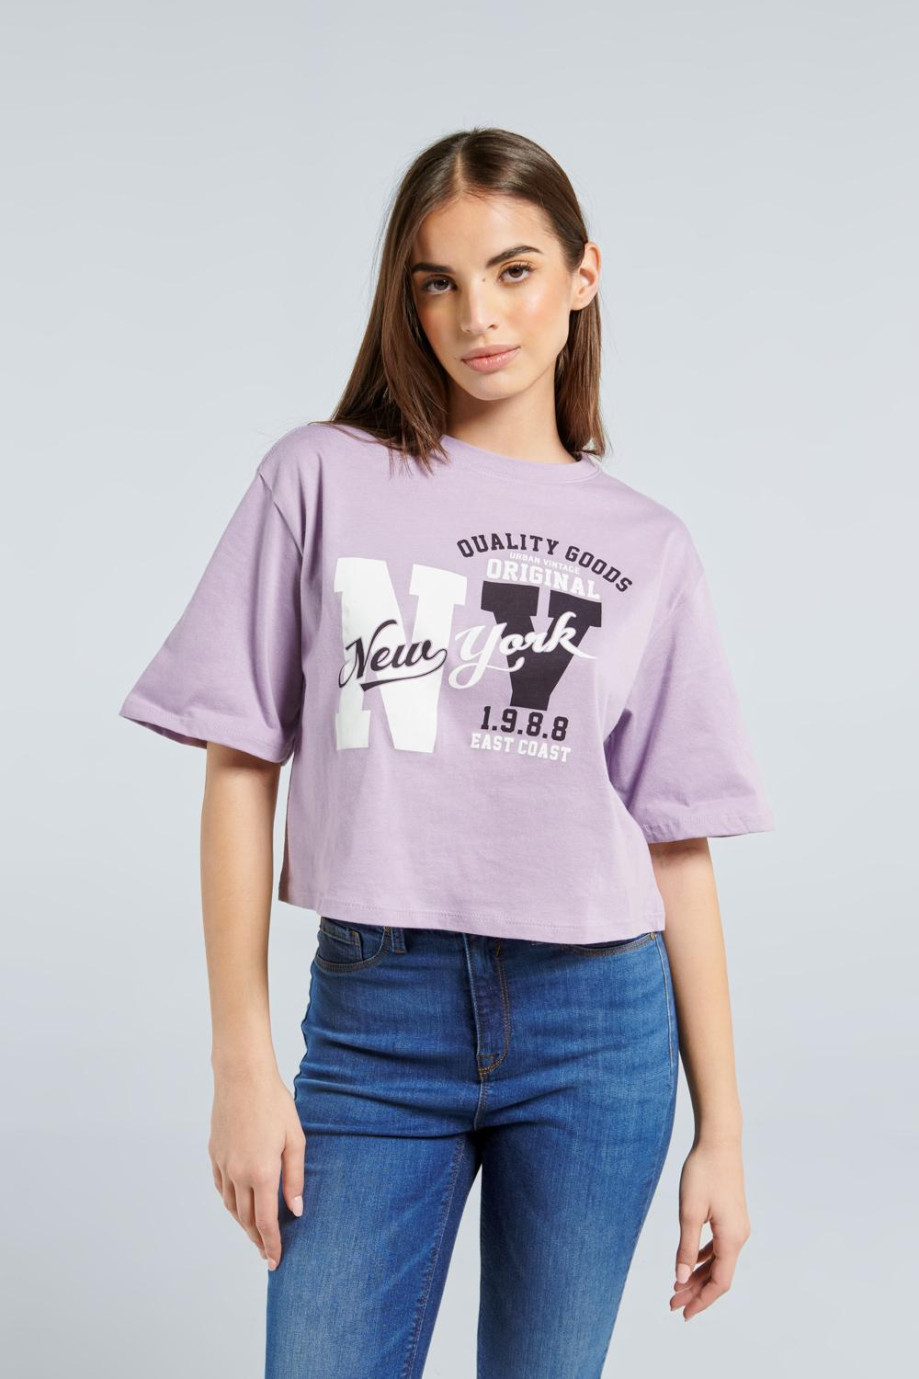 Camiseta lila clara de silueta crop top con diseño college de NY